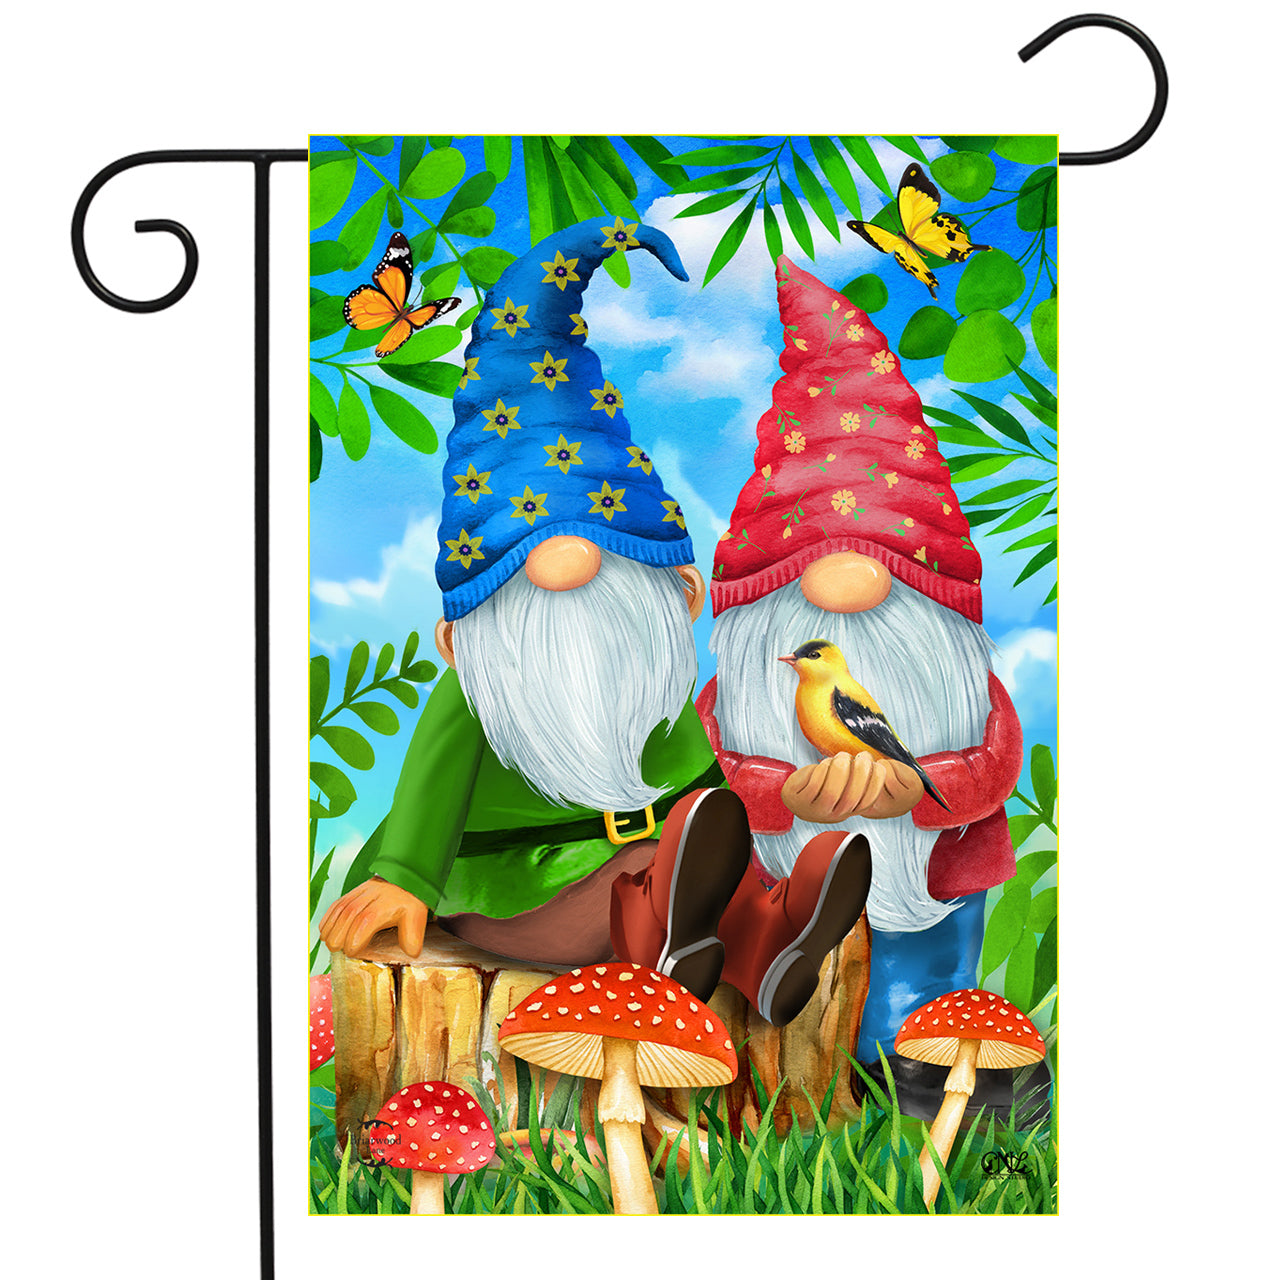 Gnome Sweet Gnome Spring Garden Flag